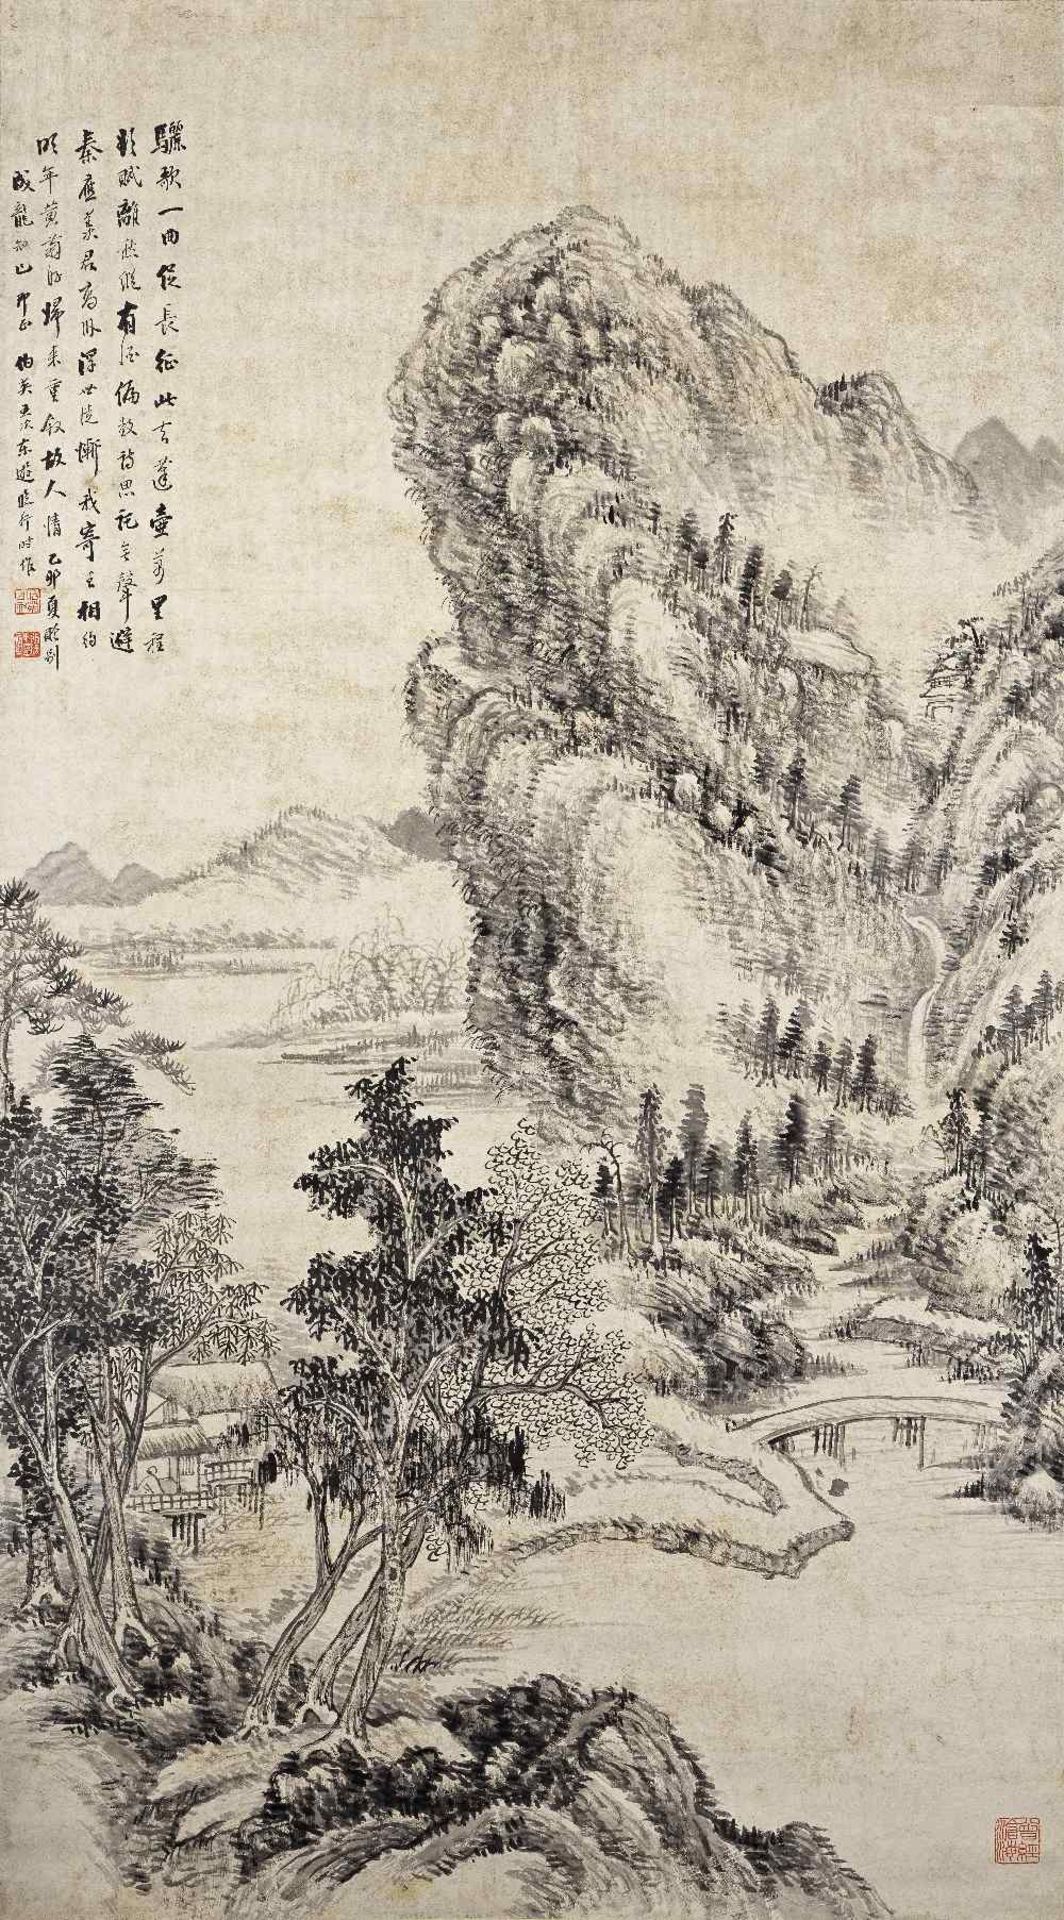 ZHANG BOYING (1871-1949) Landscape